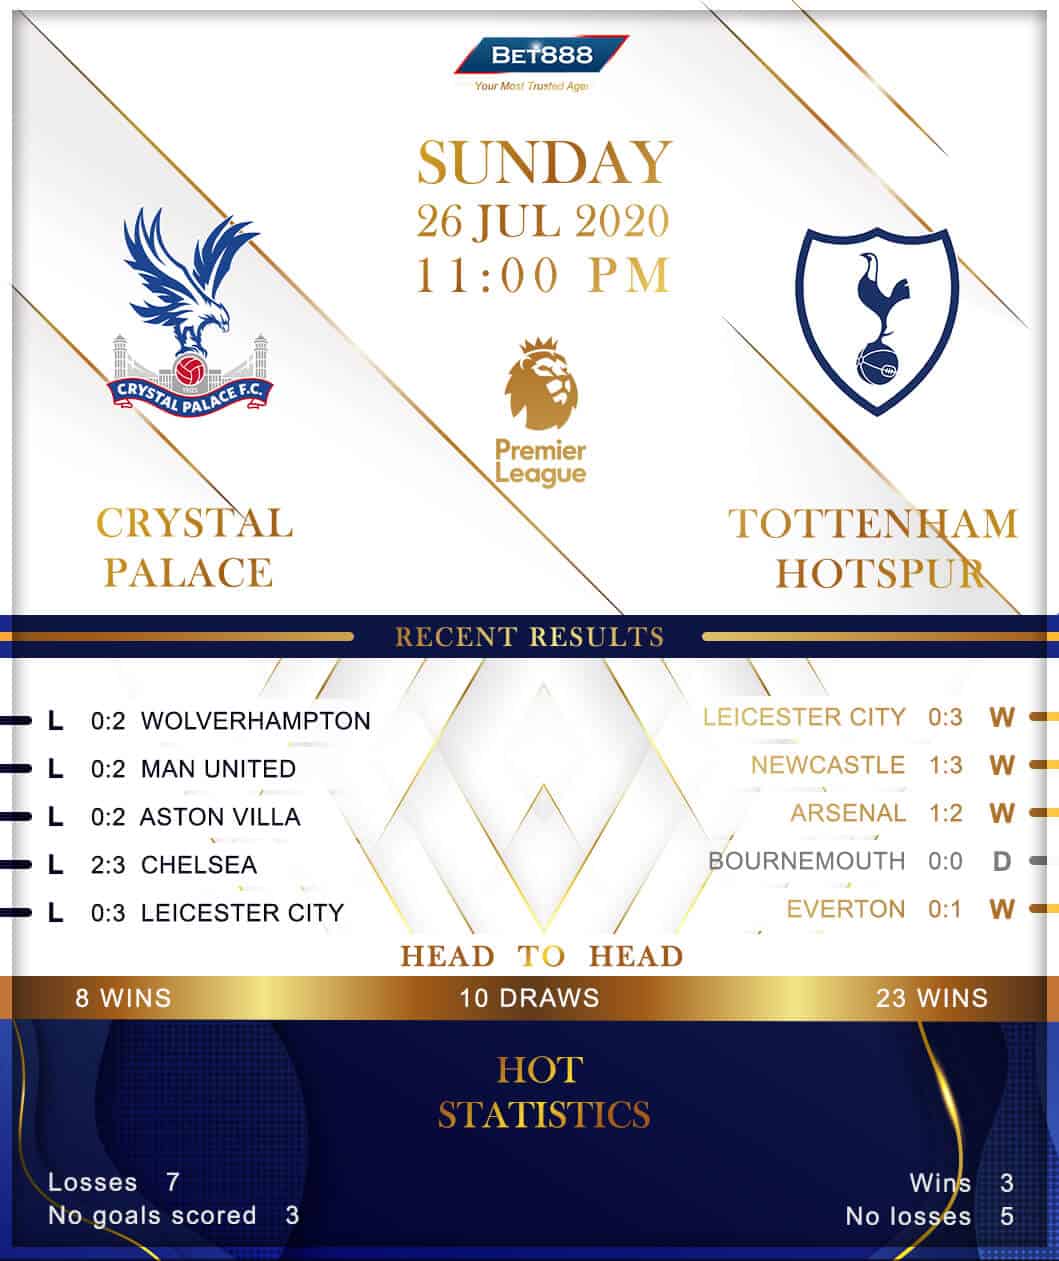 Crystal Palace vs Tottenham Hotspur 26/07/20